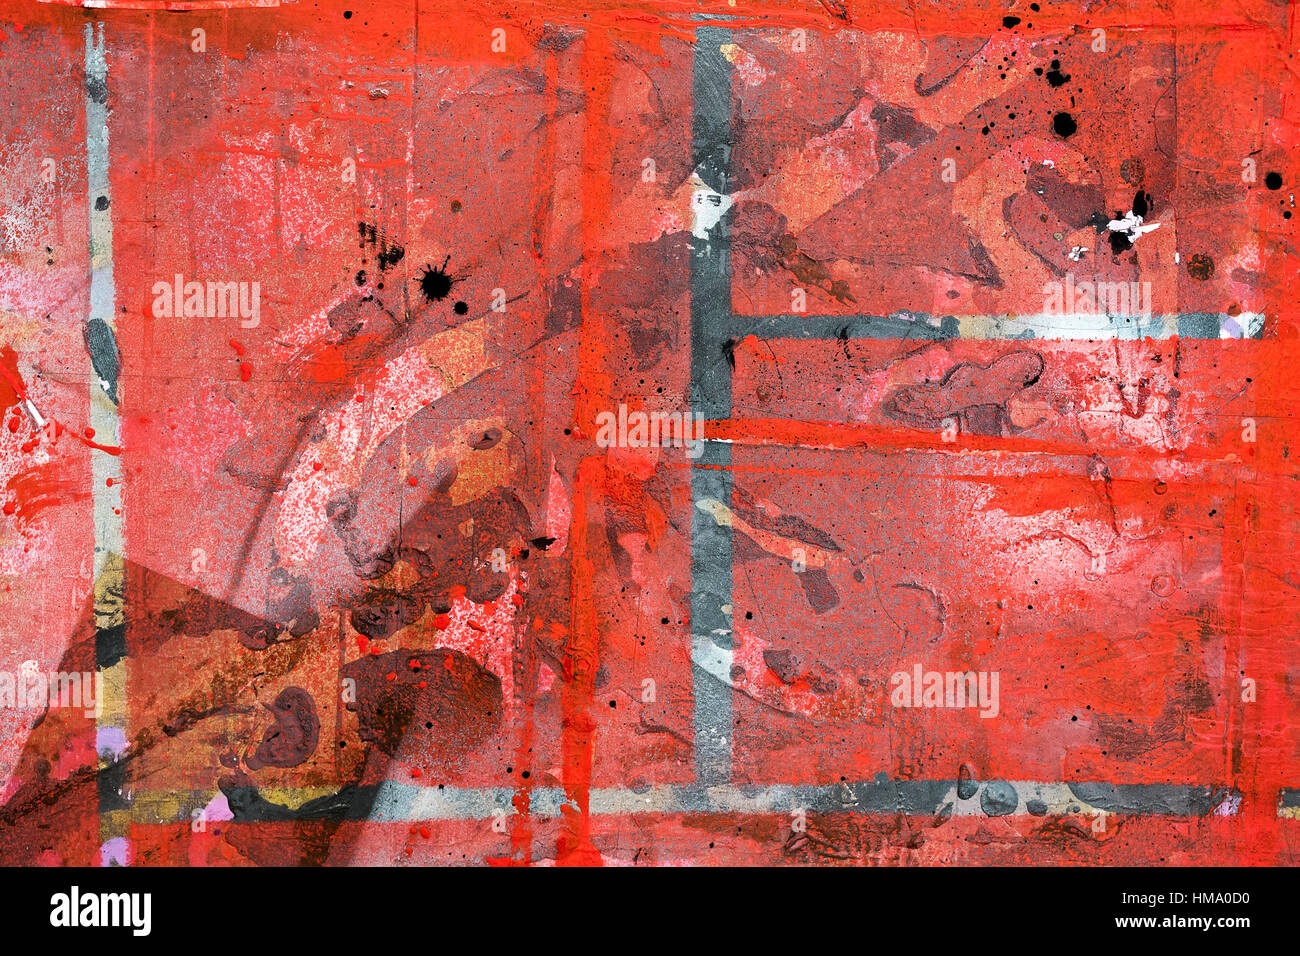 La surface tachée et peint dans des couleurs rouge Banque D'Images